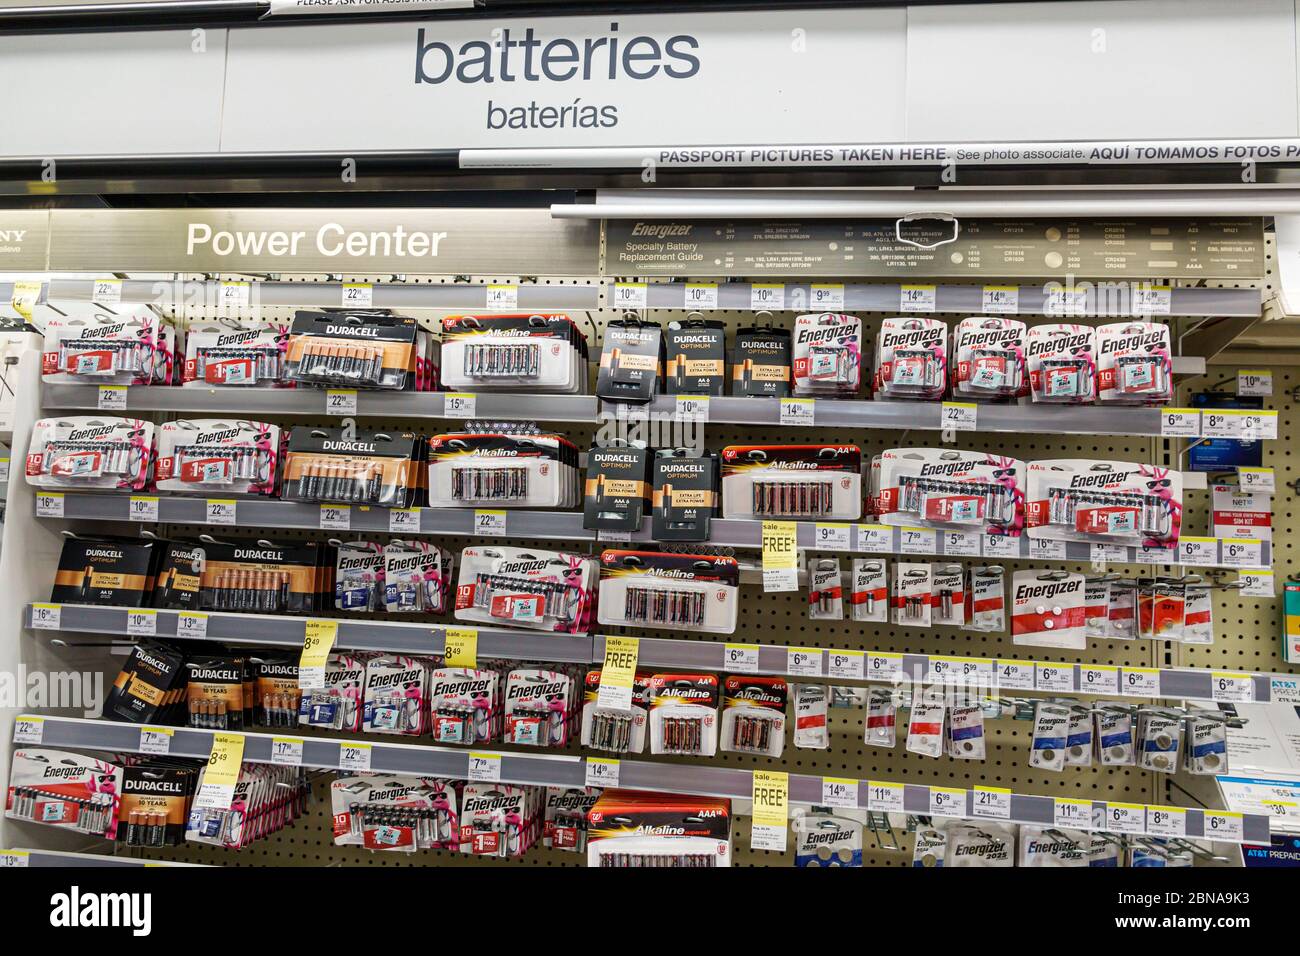 Baterias y Pilas - Fotobuy store